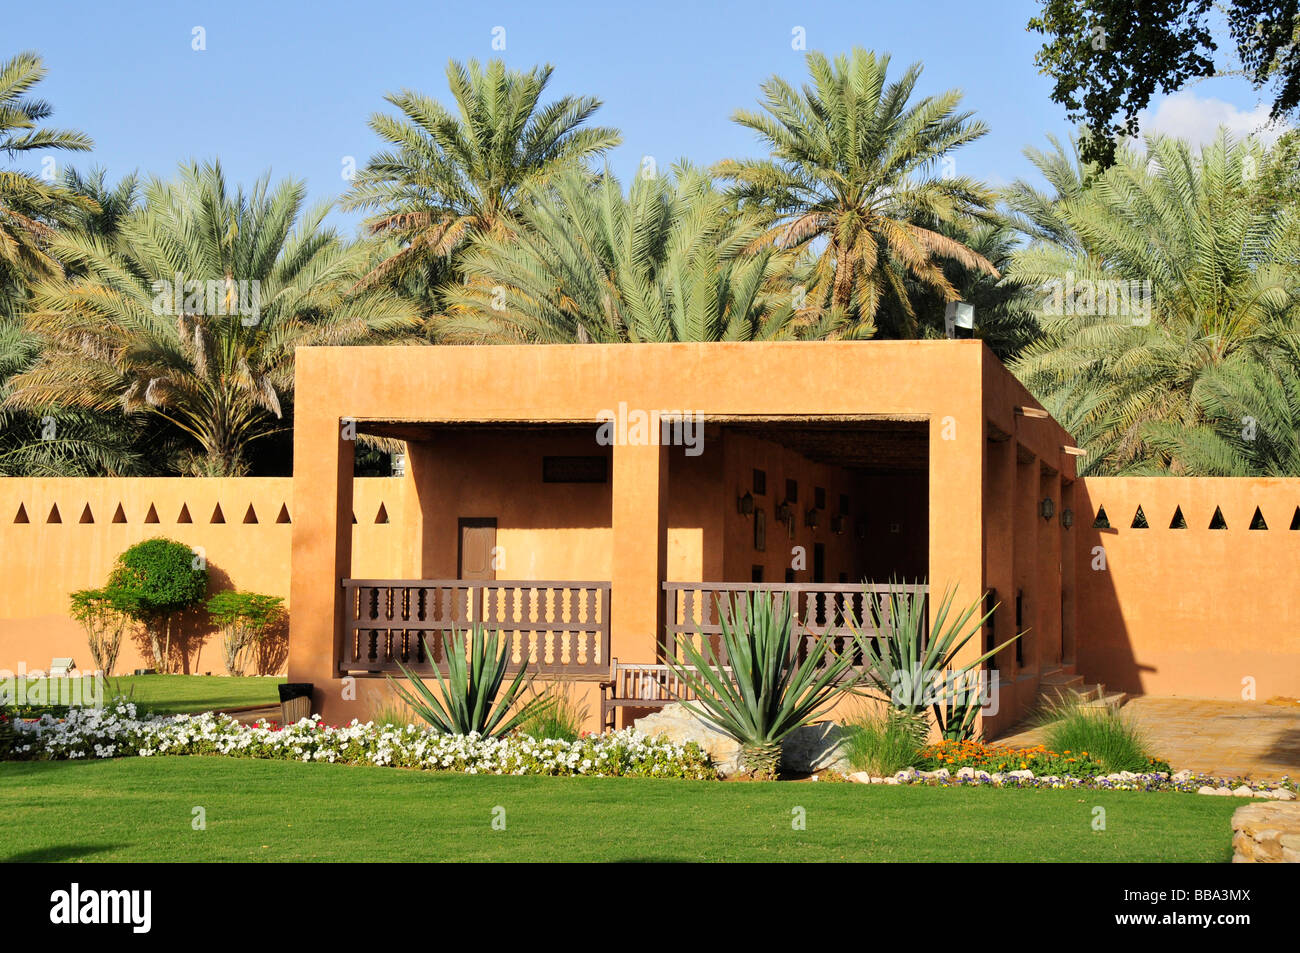 Museo del Palacio de Al Ain, Al Ain, Abu Dhabi, Emiratos Árabes Unidos, Arabia, Oriente, Oriente Medio Foto de stock